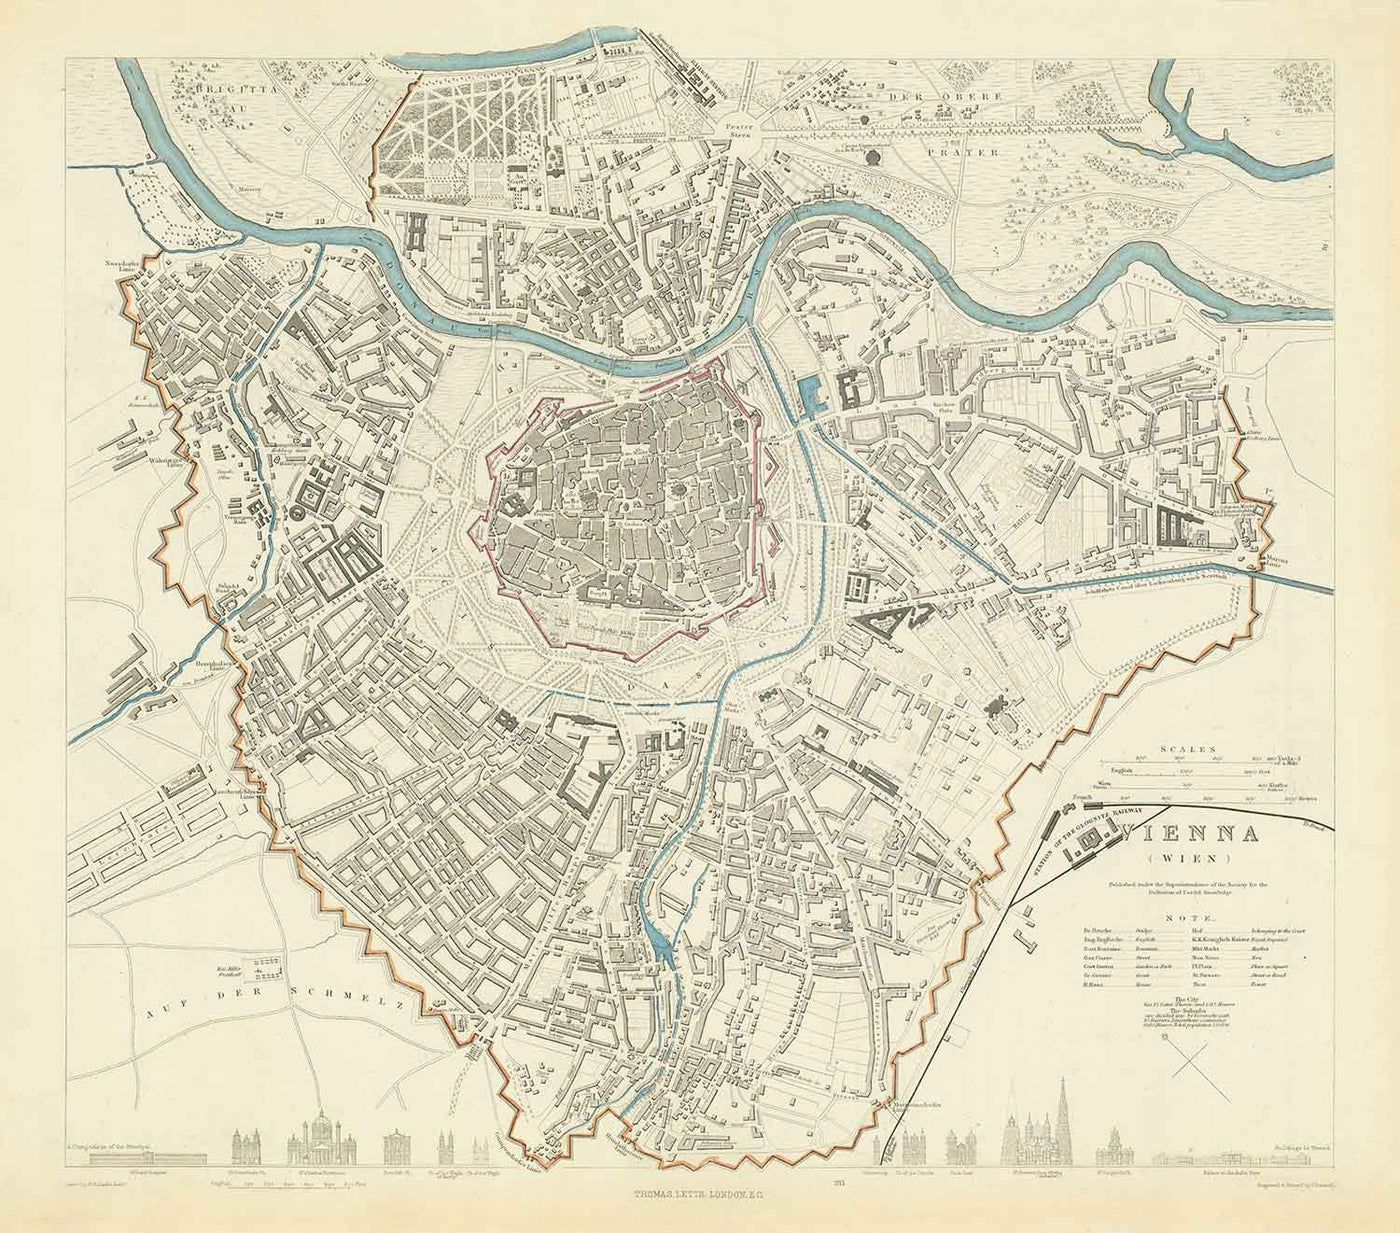 Alte Karte von Wien von SDUK aus dem Jahr 1887 – Donau, Alte Donau, Graben, Rennweg, Karlskirche